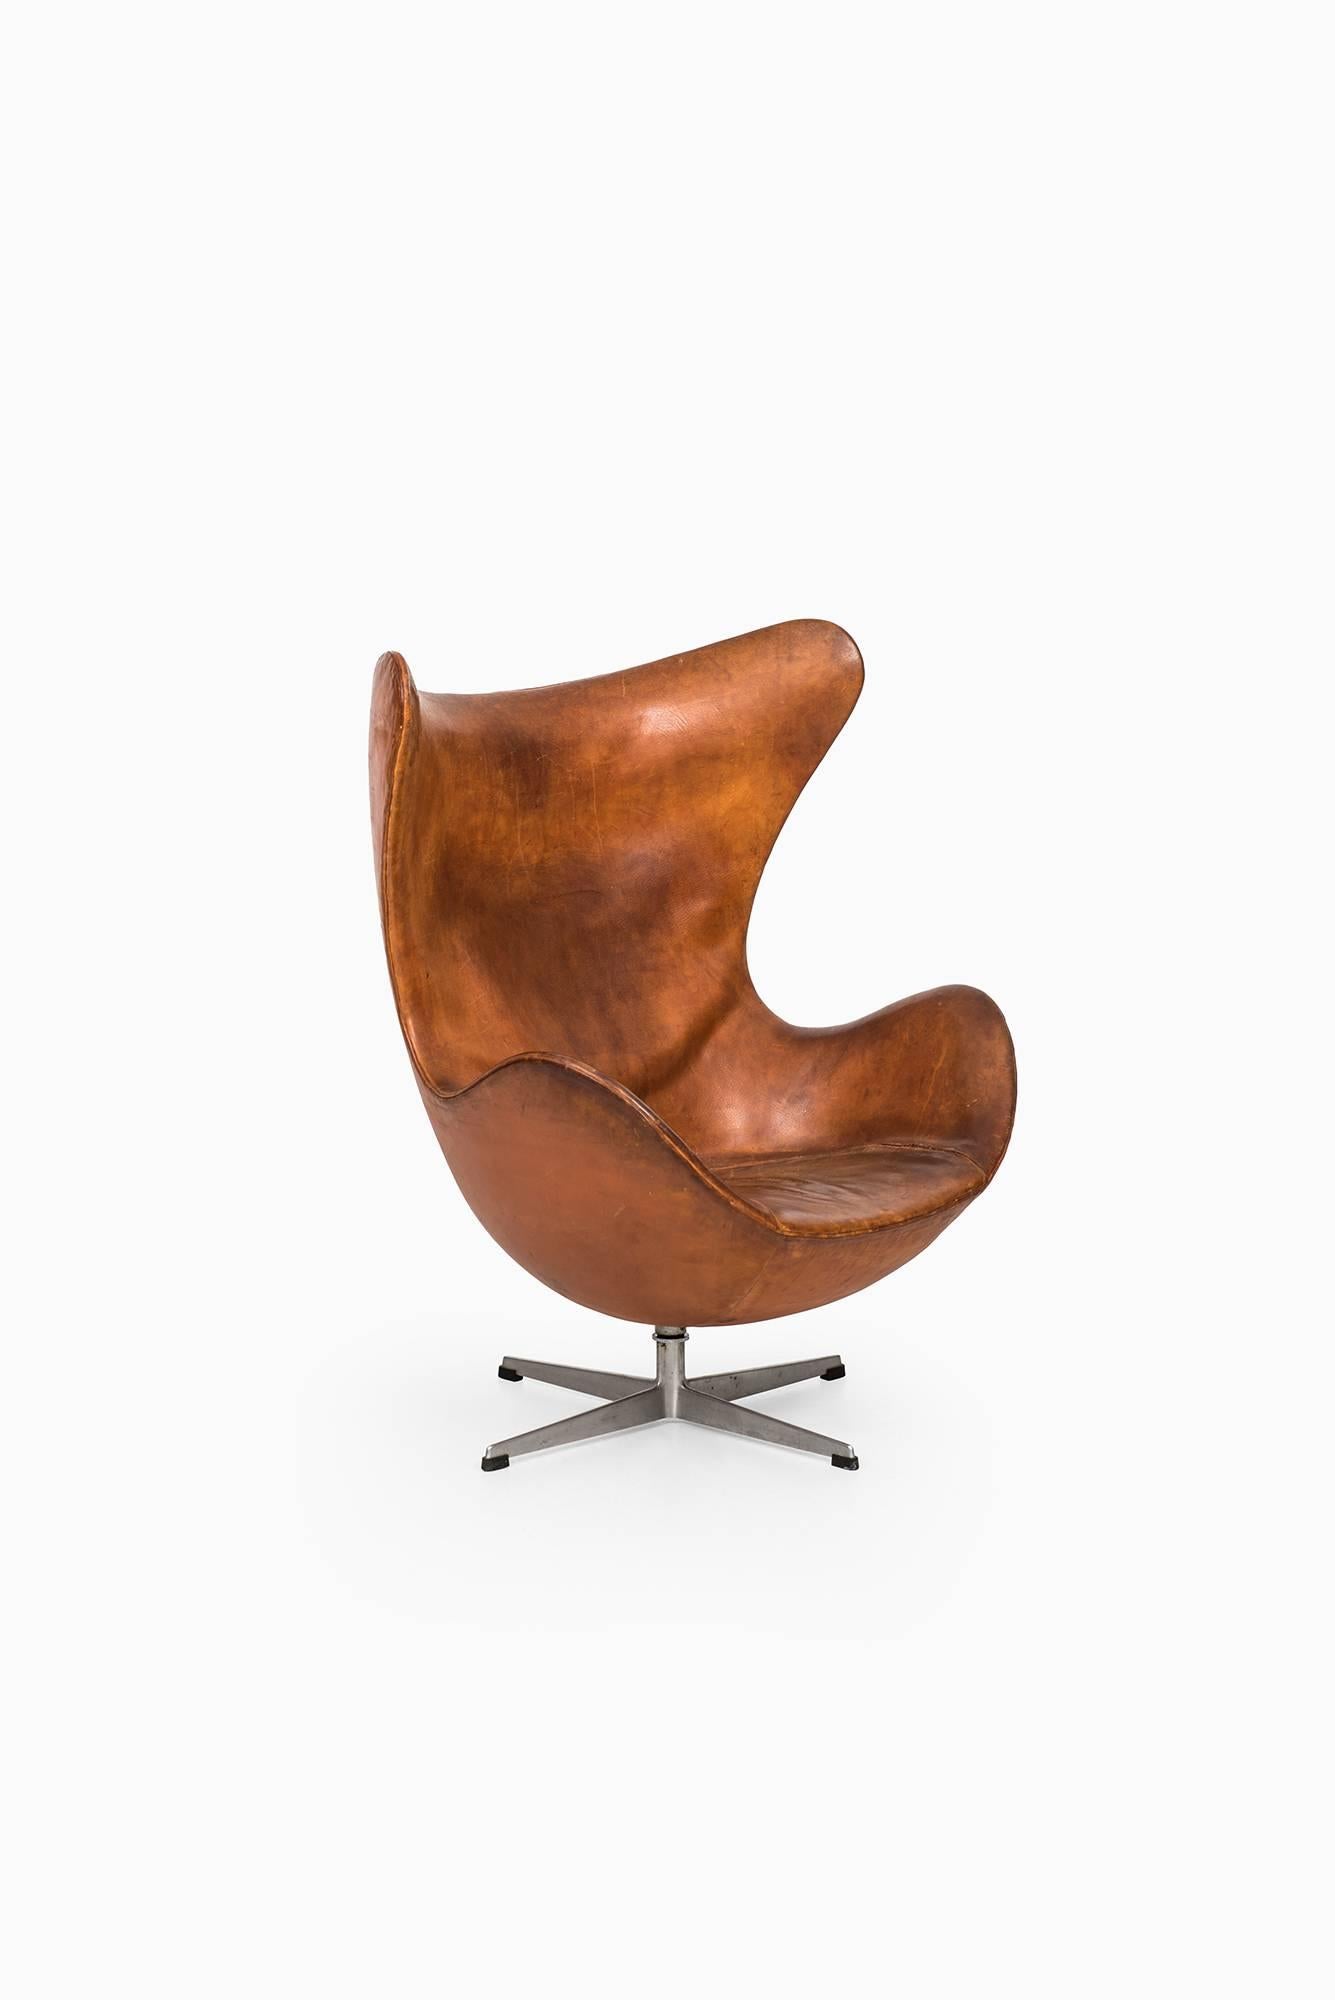 Arne Jacobsen Early Egg Chair by Fritz Hansen in Denmark 2